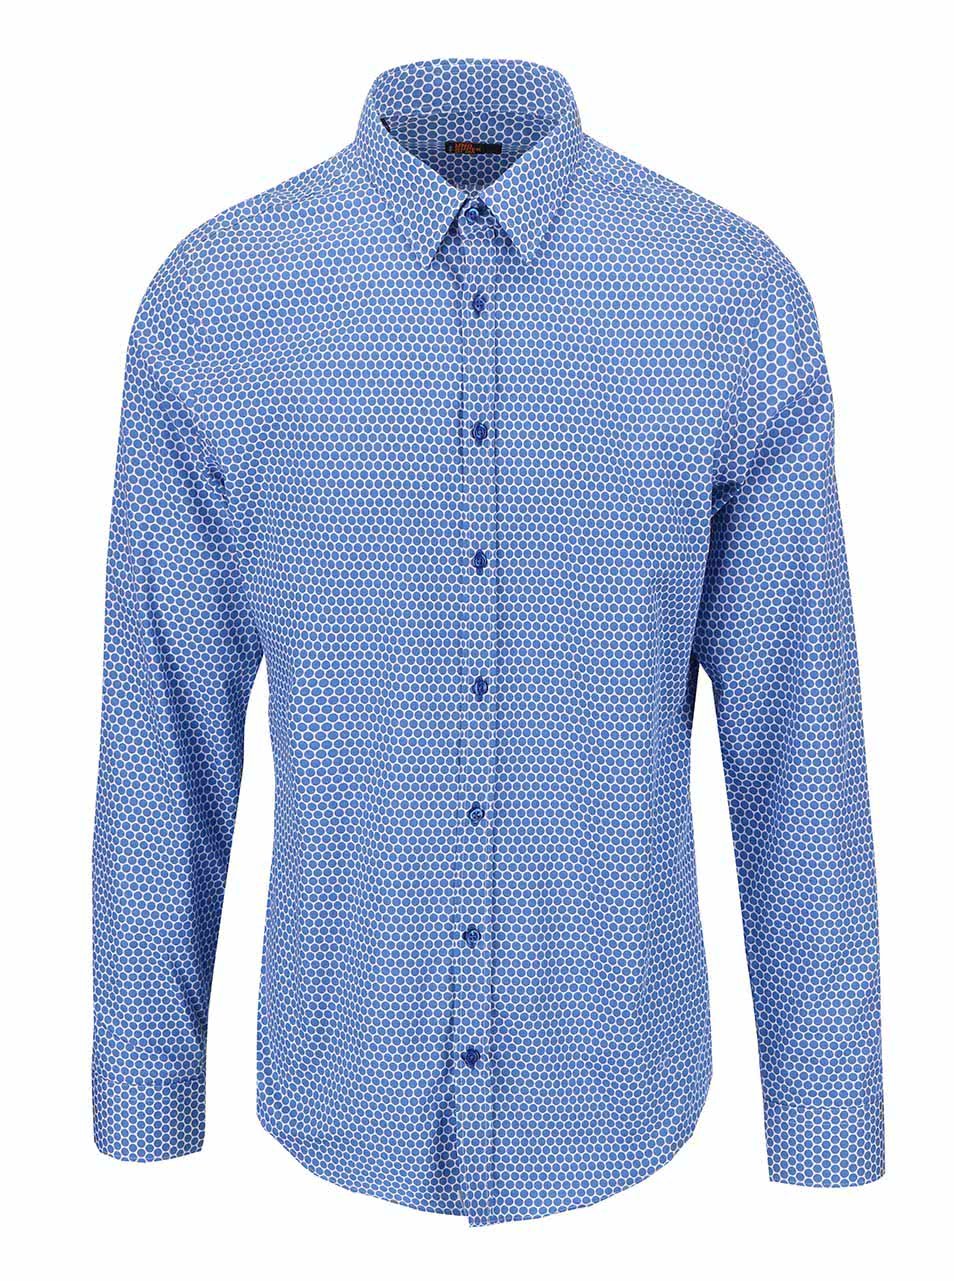 Bílo-modrá puntíkovaná košile Seidensticker Kent Uno Super Slim